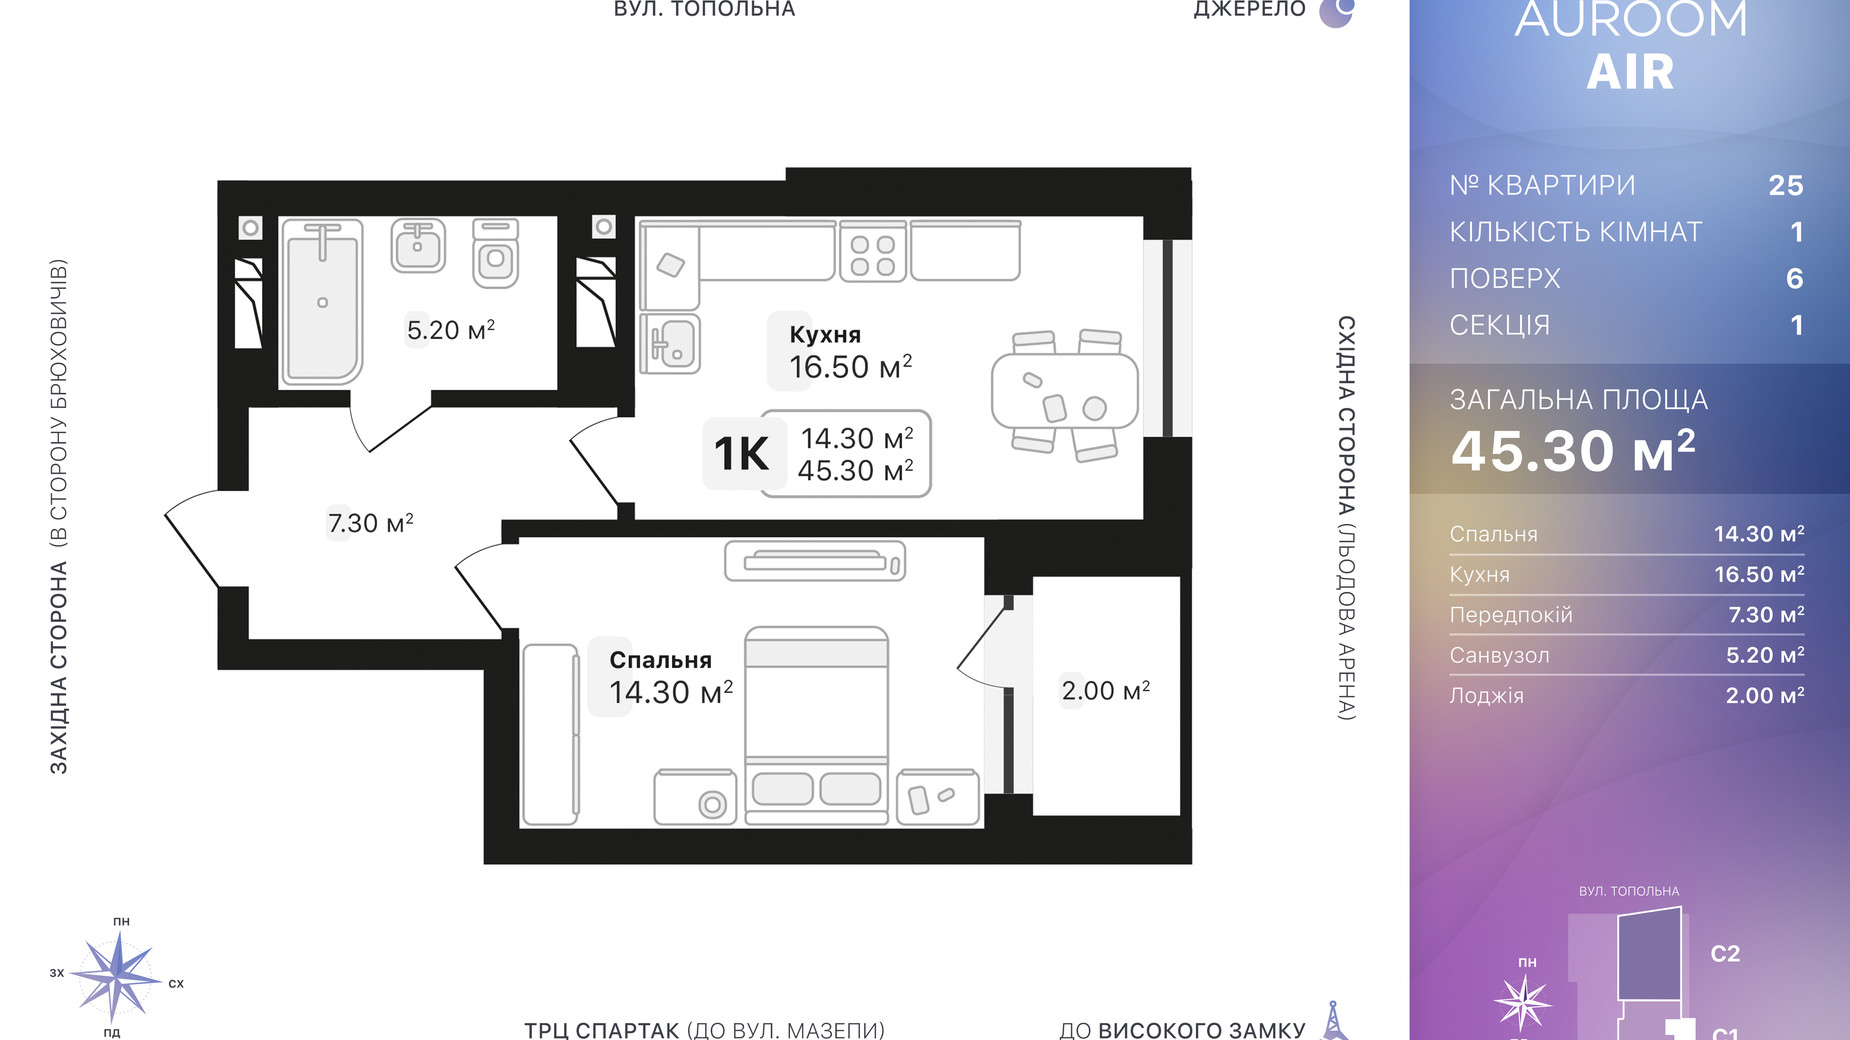 Планировка 1-комнатной квартиры в ЖК Auroom Air 45.3 м², фото 552227